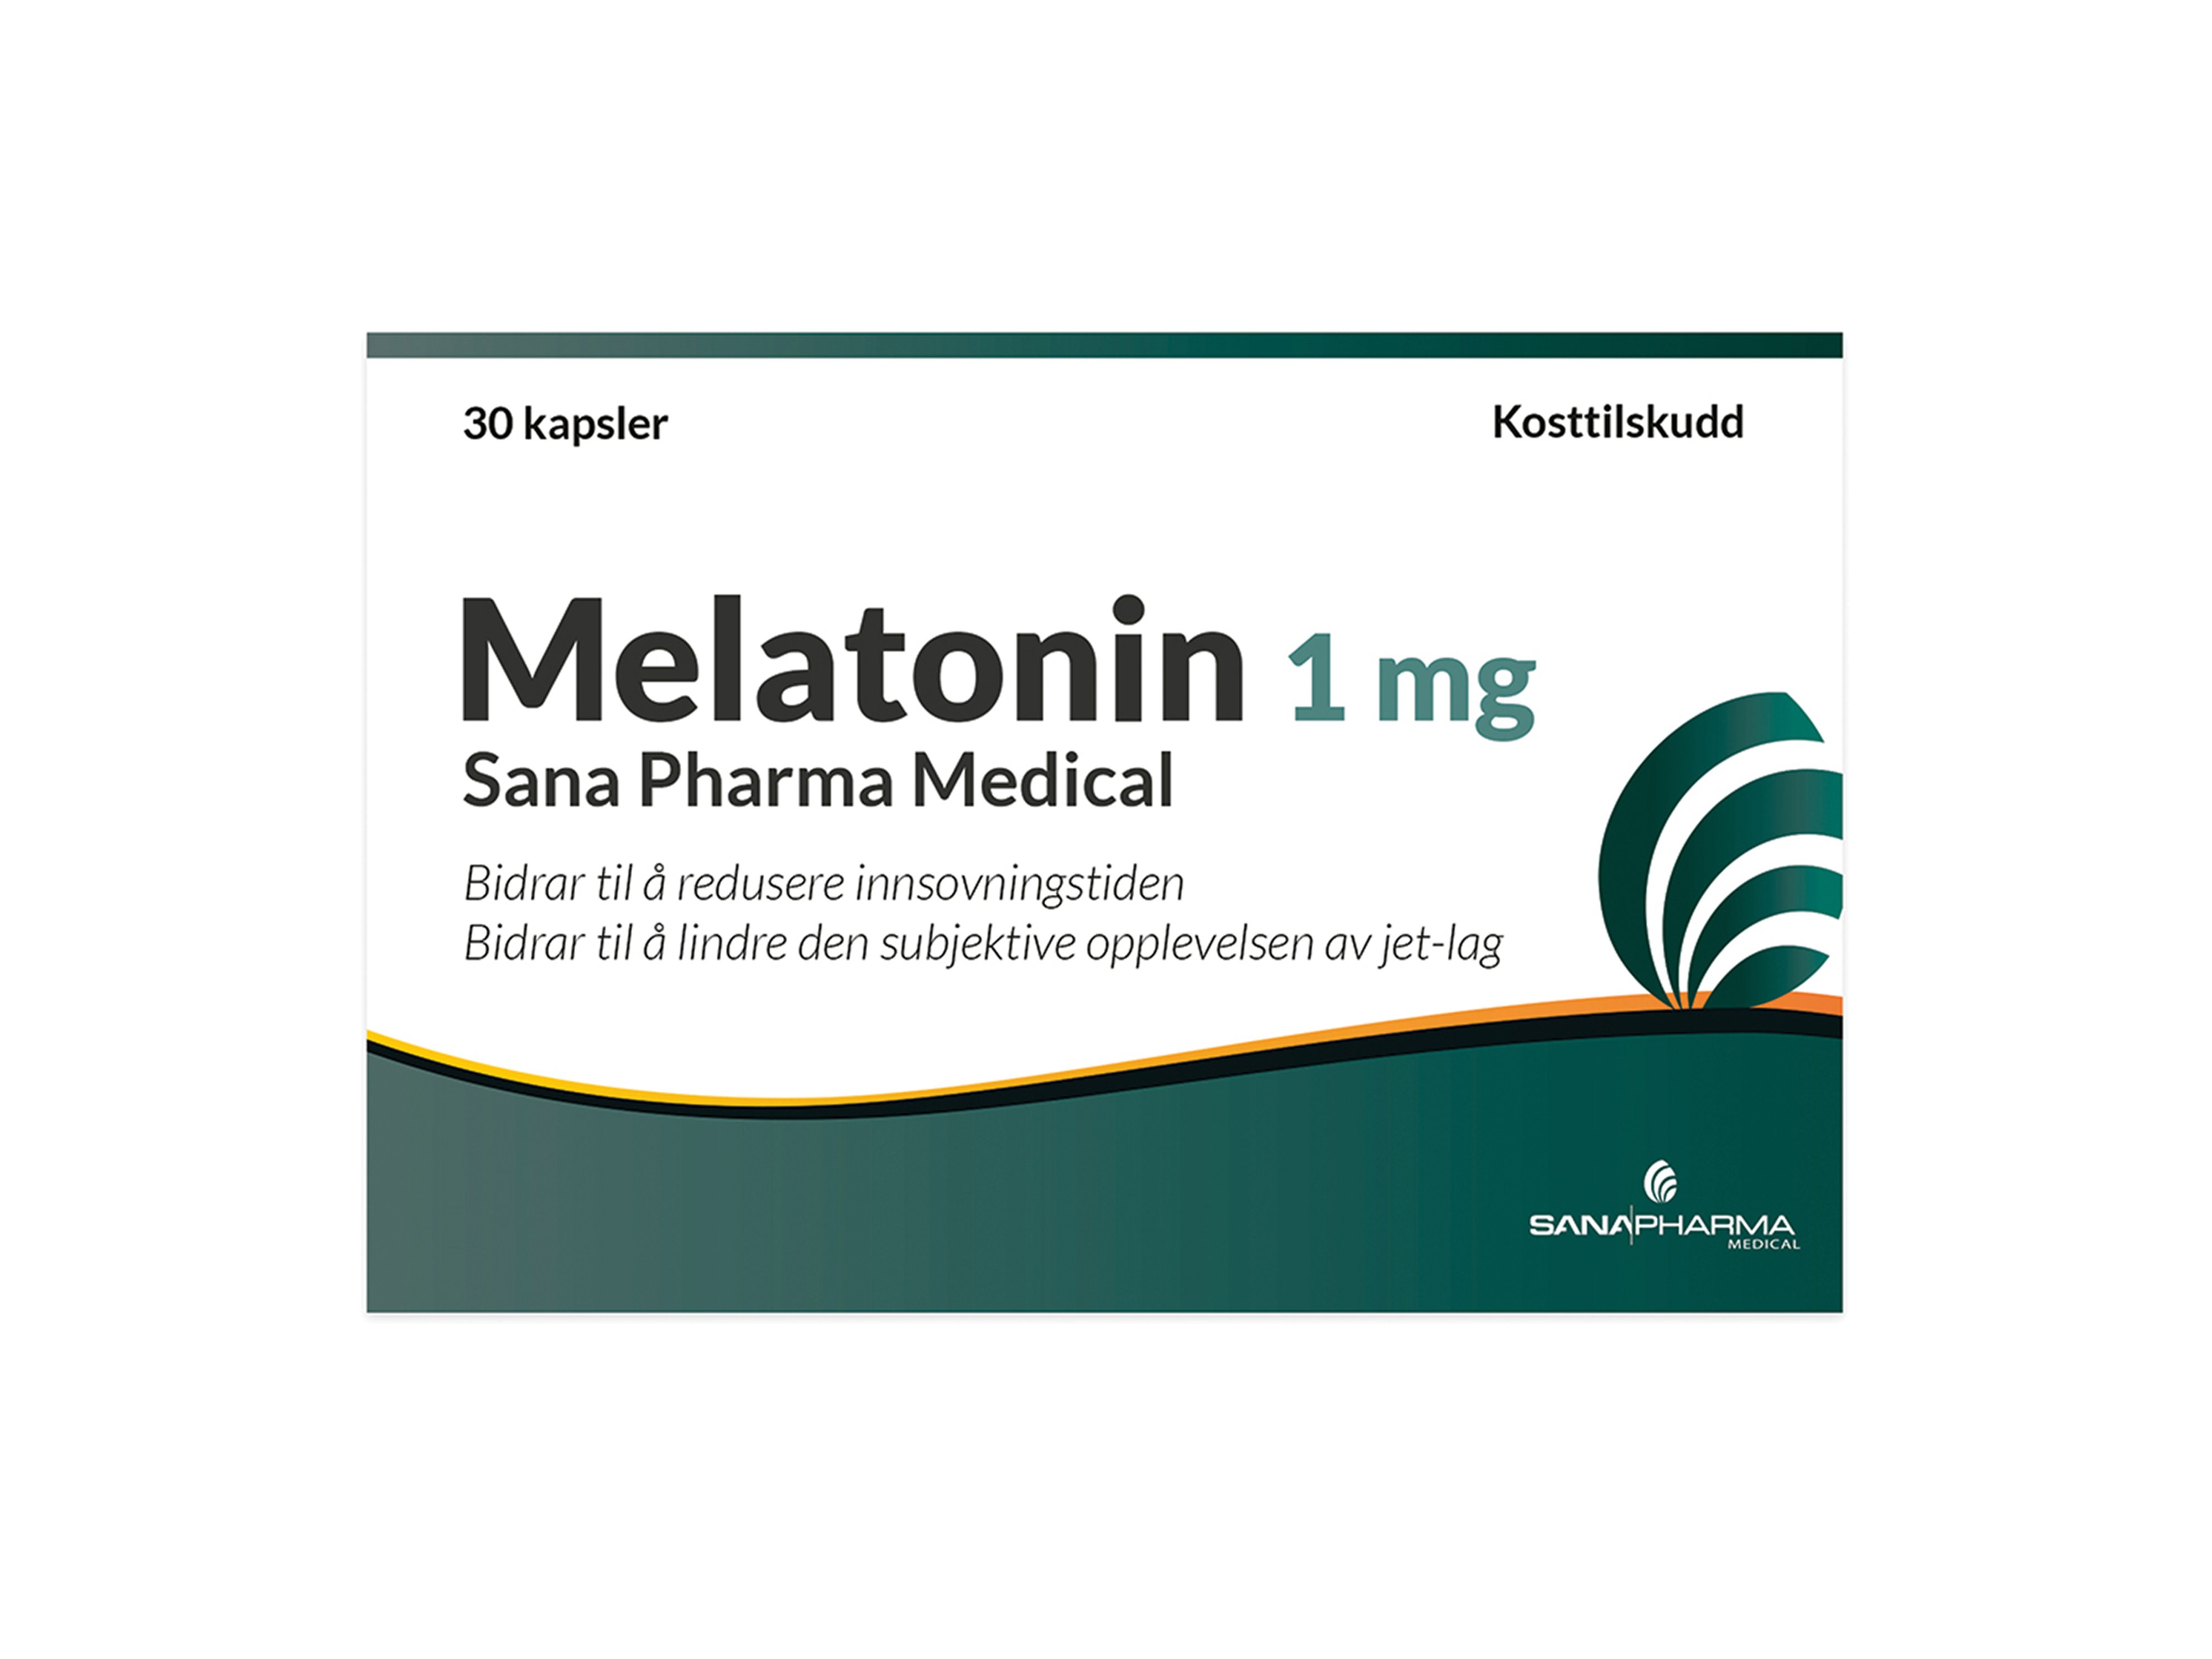 Sana Pharma Medical Melatonin Kapsel 1 mg, 30 stk